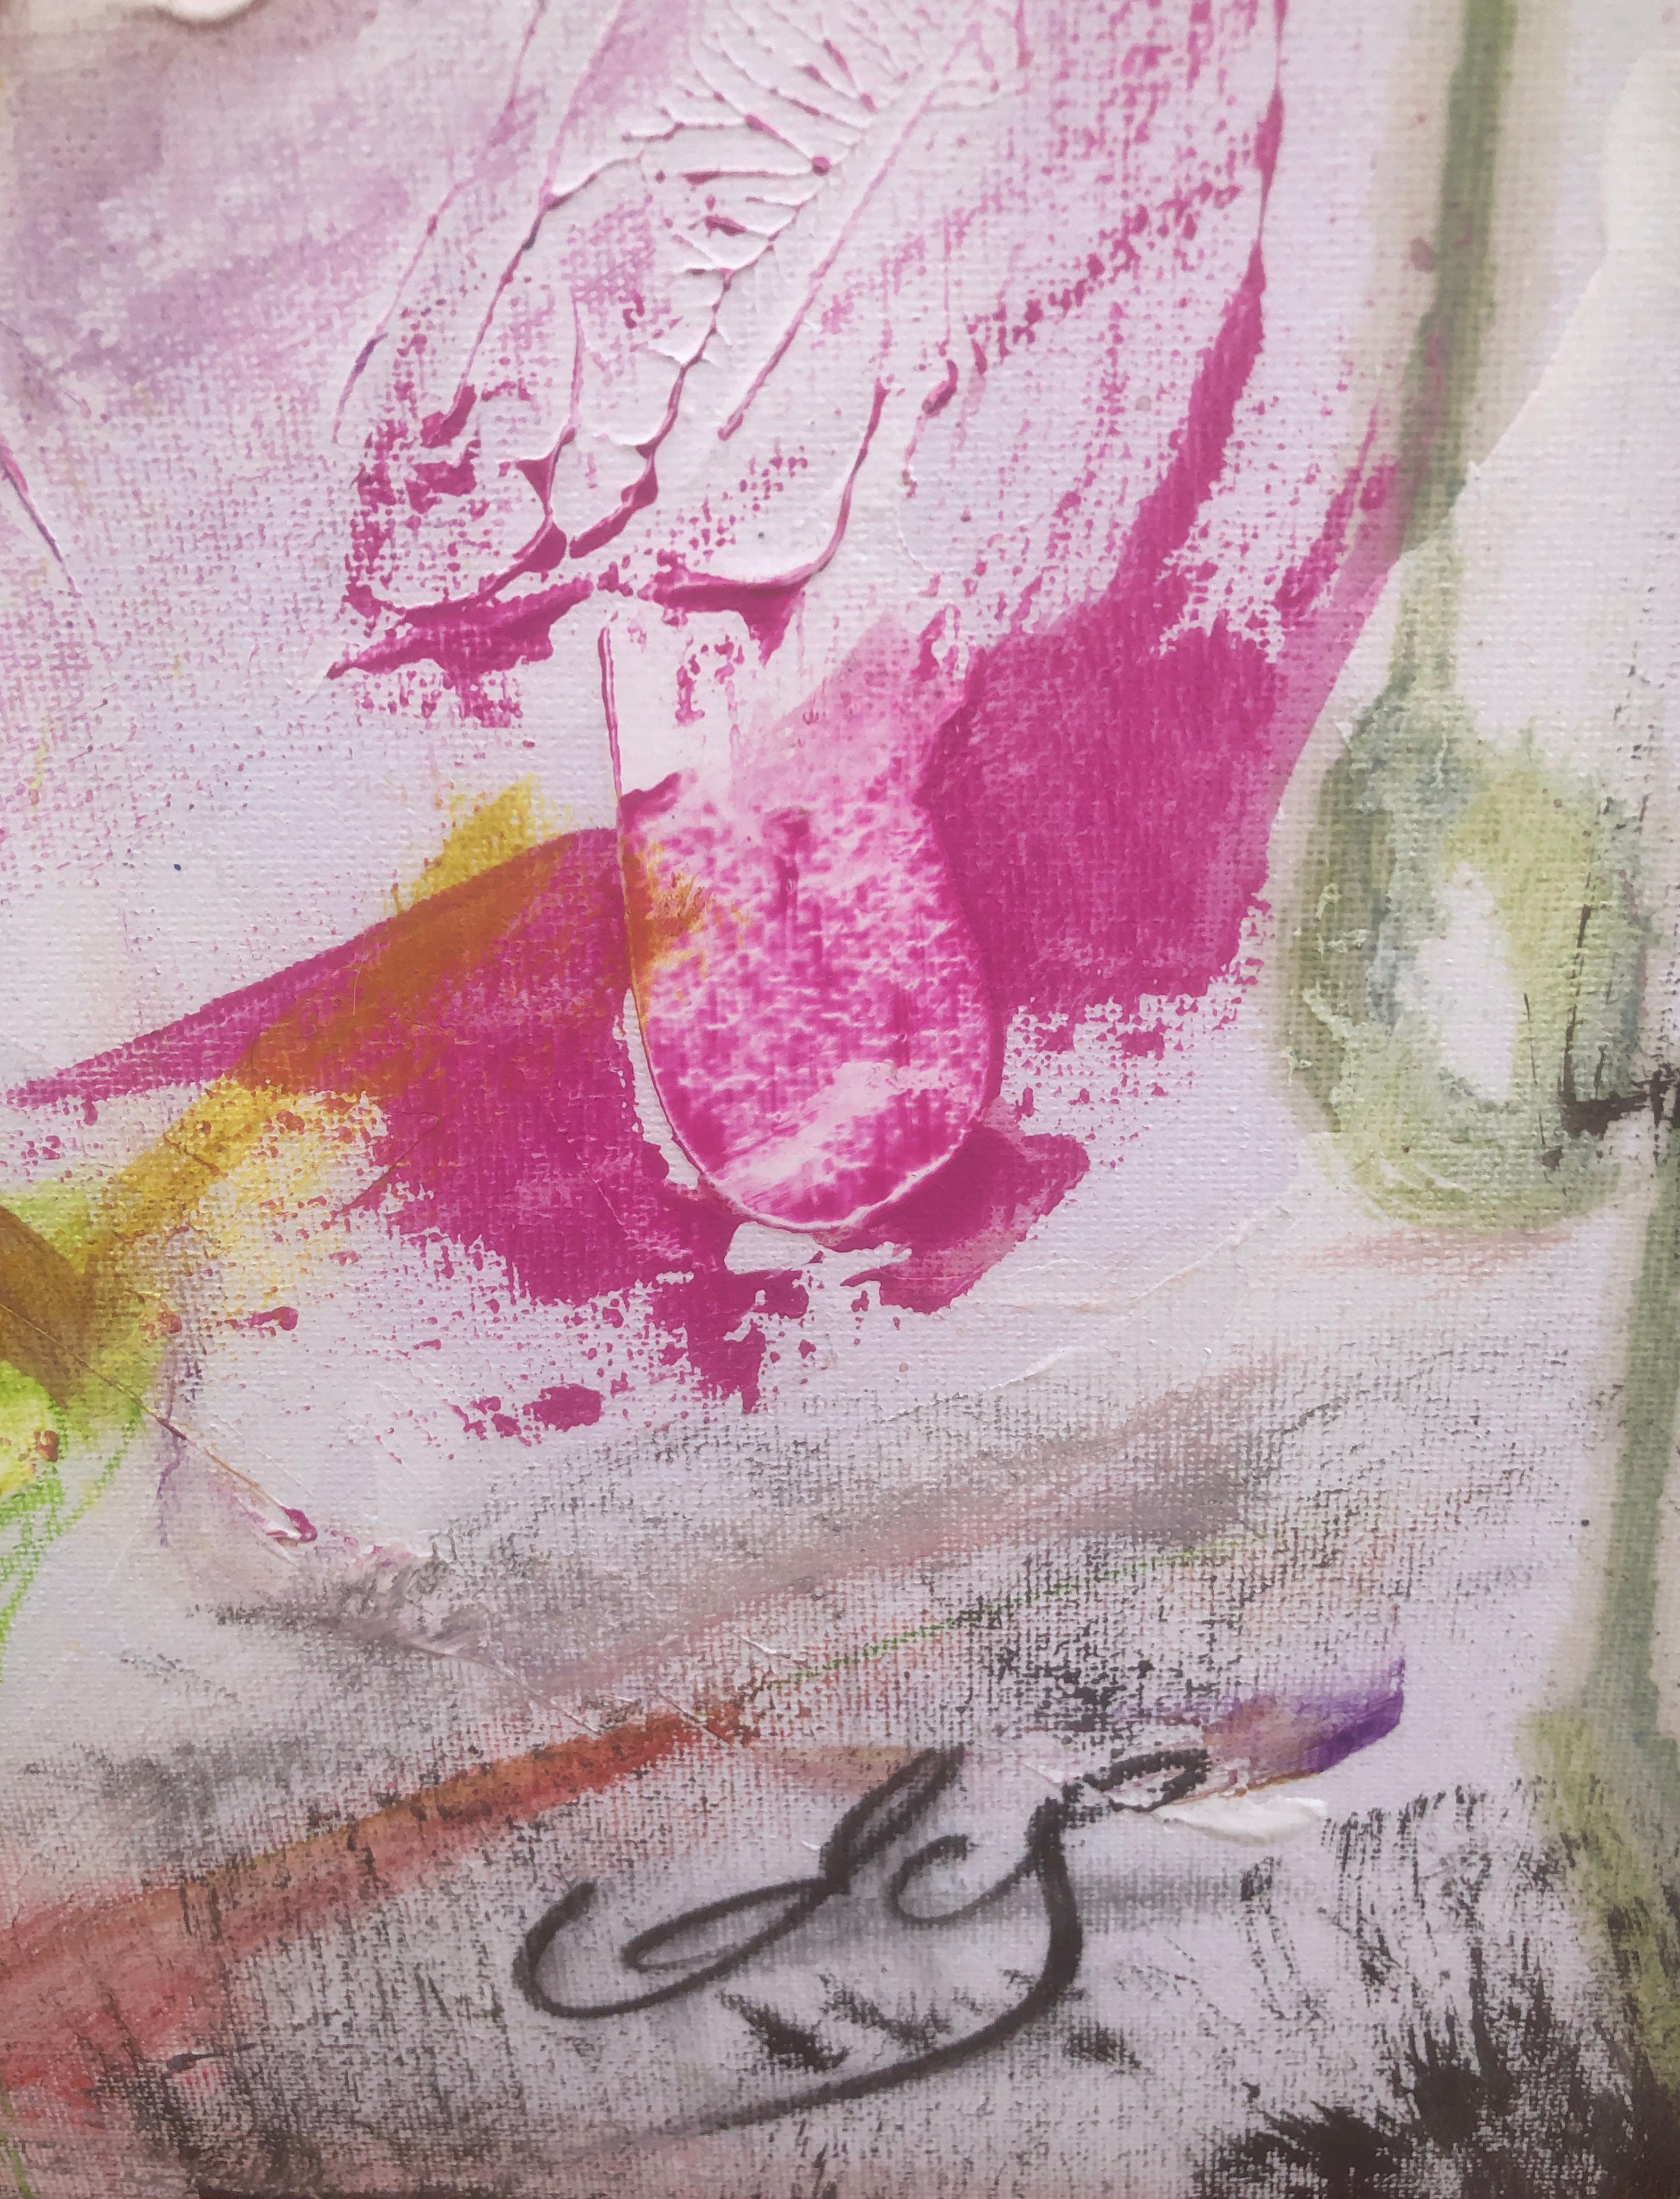 Abstrakt-expressionistisches Gemälde in Öl auf Leinwand mit Farbexplosion – Painting von Nerea Caos